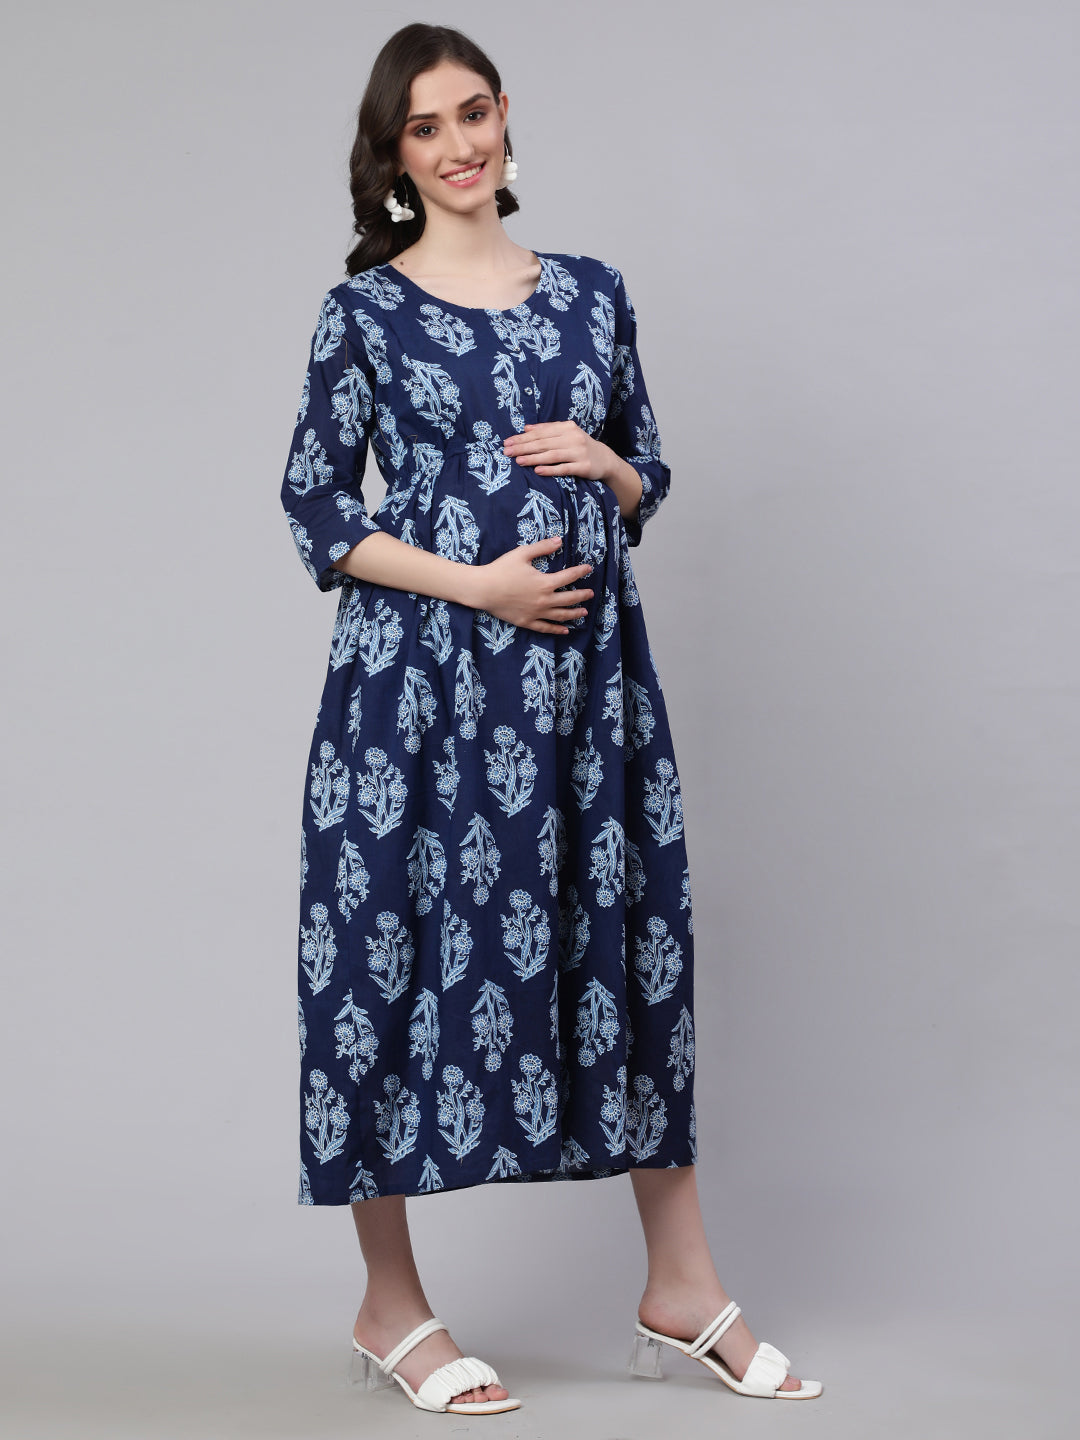 Women's Blue Printed Flared Maternity Dress - Nayo Clothing